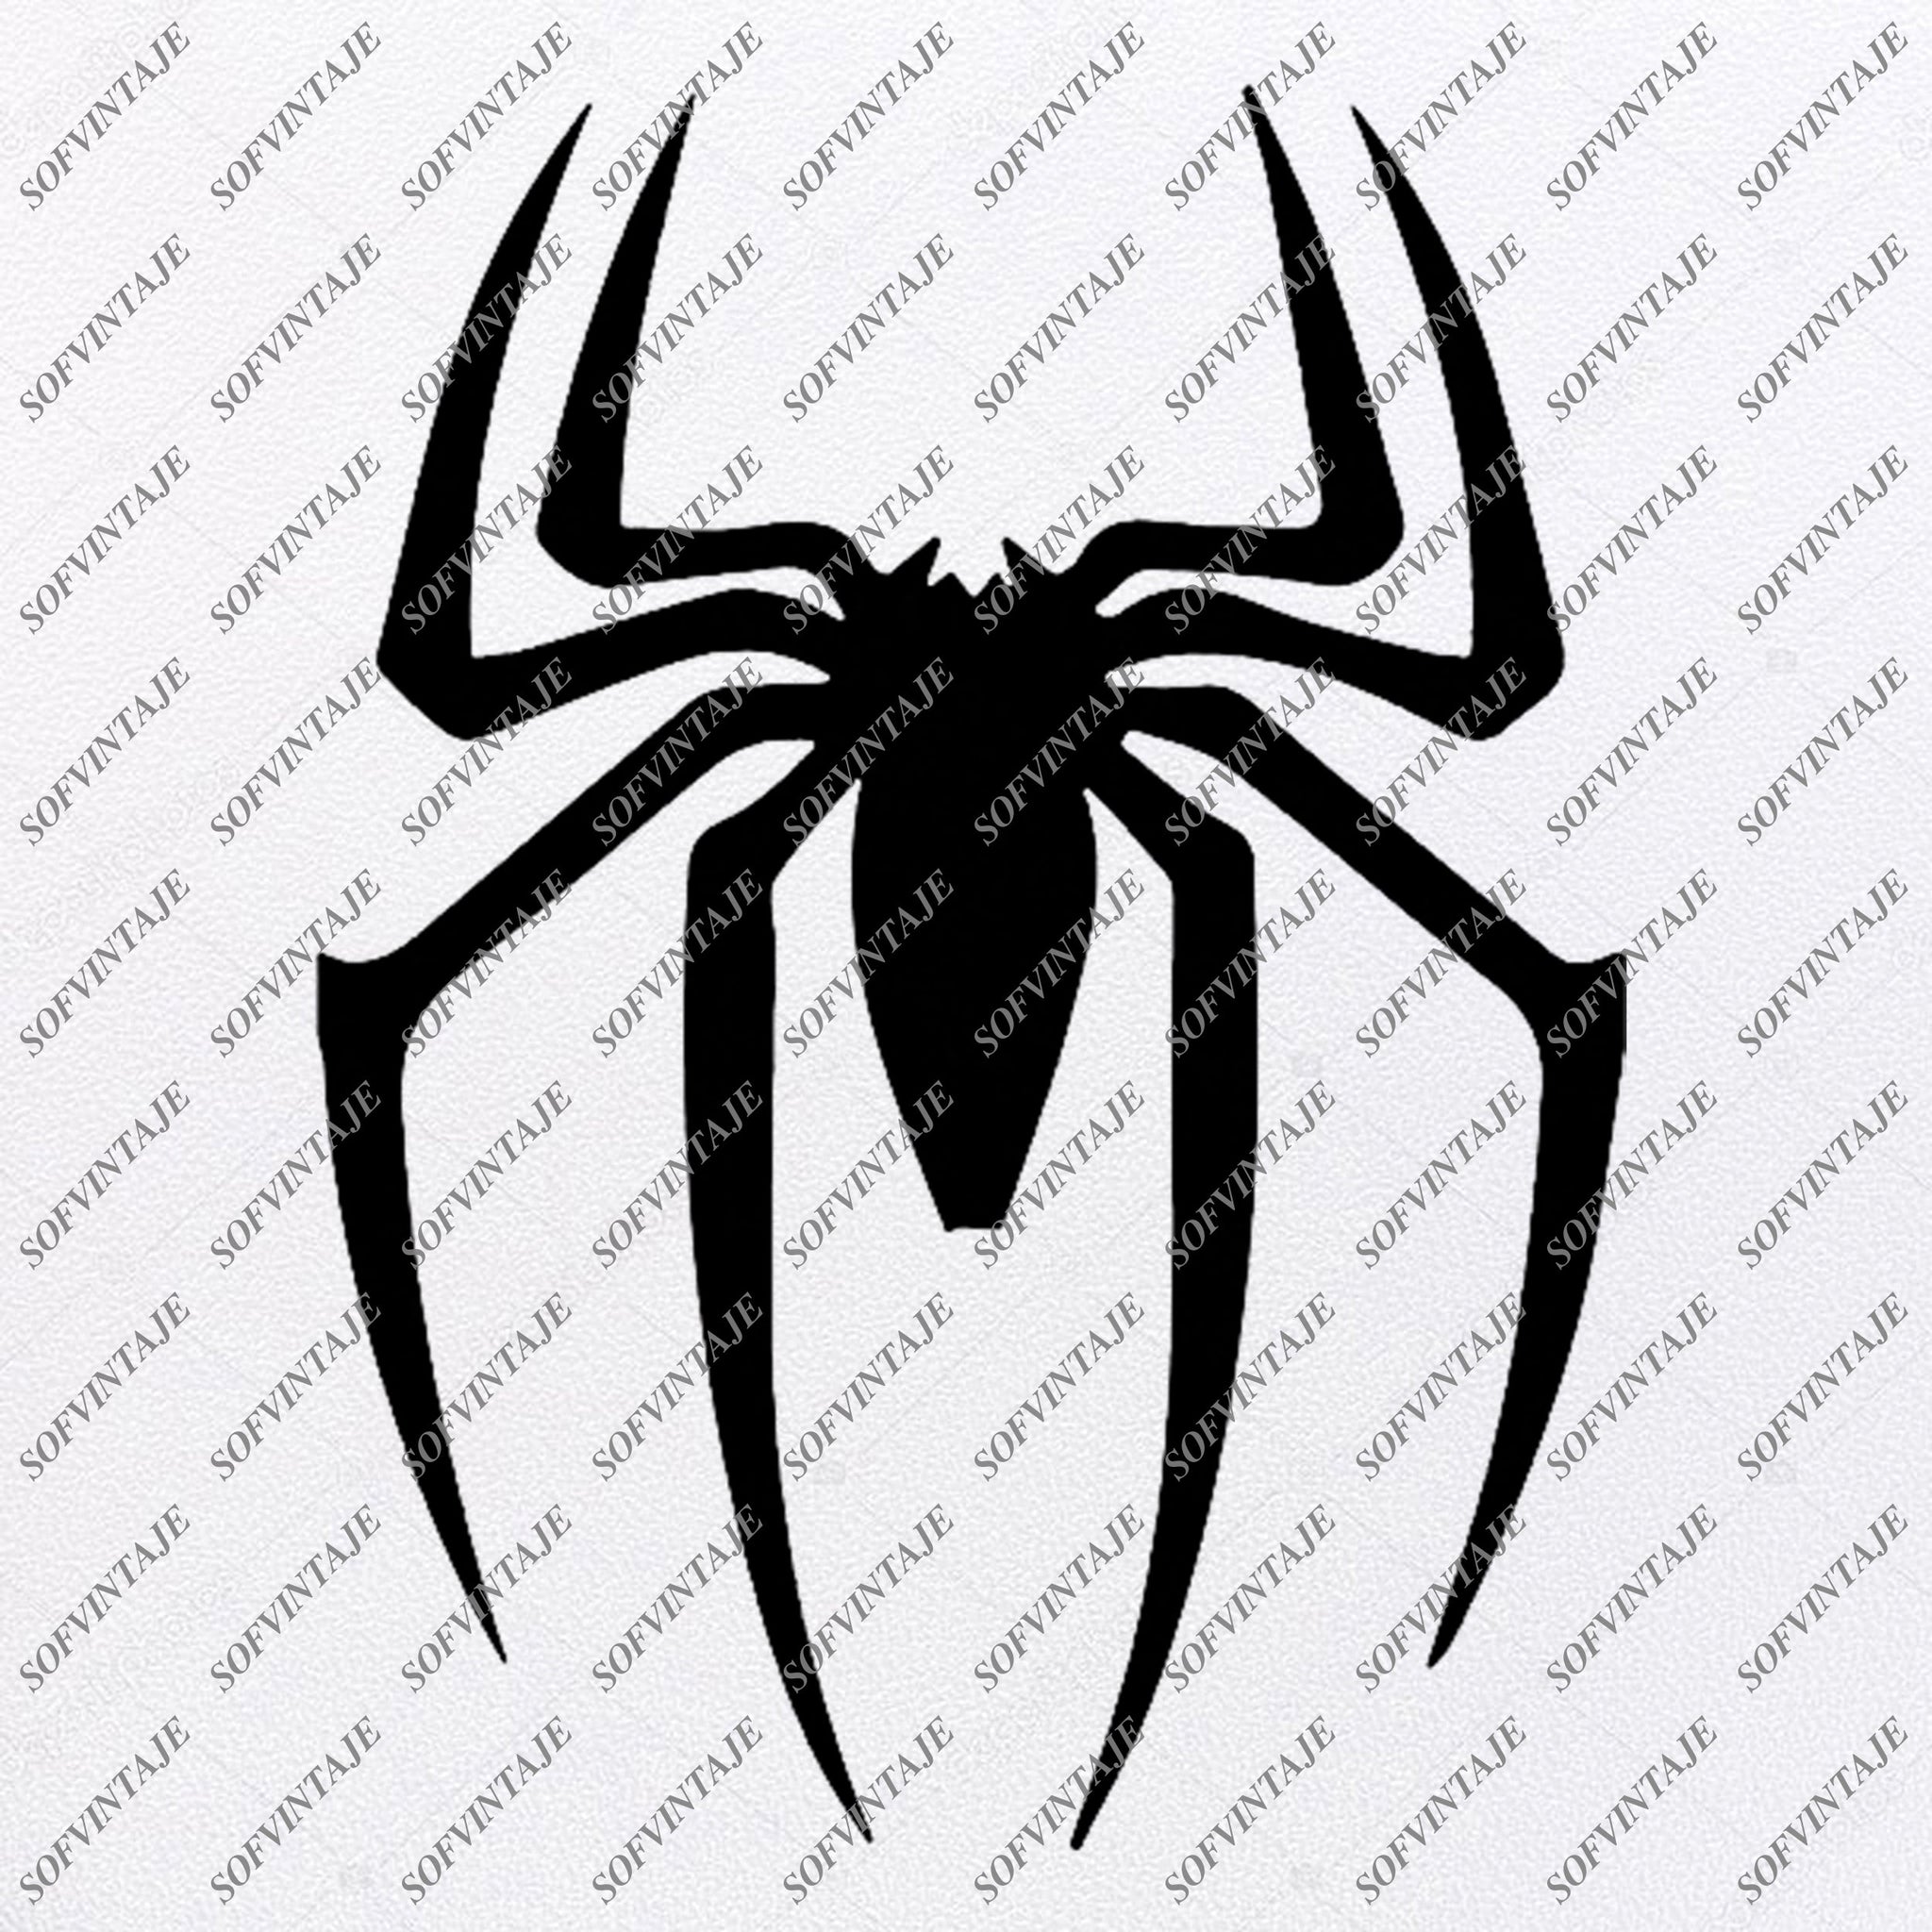 Download Spiderman Logo Svg File Spiderman Original Svg Designtattoo Svg Spider Sofvintaje SVG, PNG, EPS, DXF File